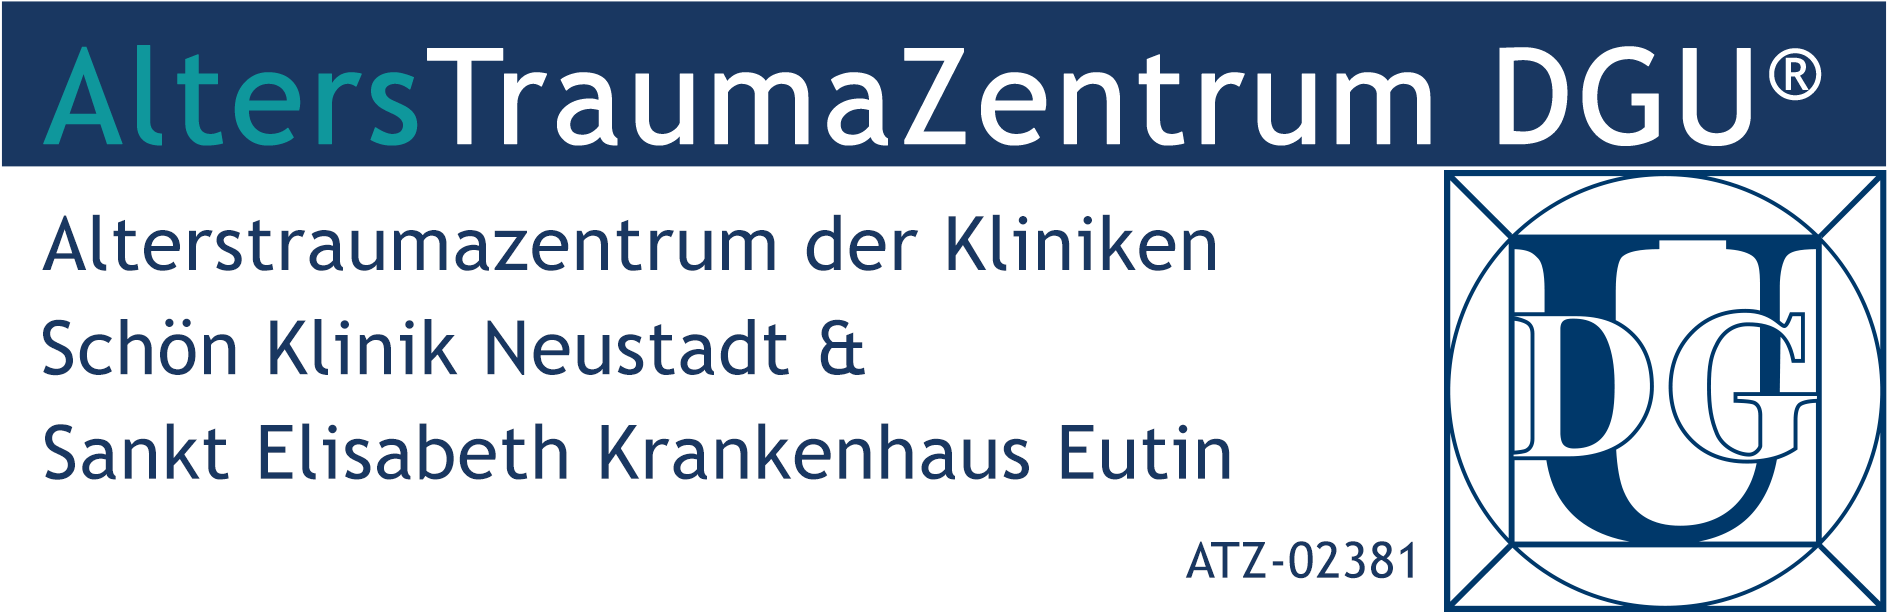 ATZ Logo Neustadt Eutin ATZ 02381